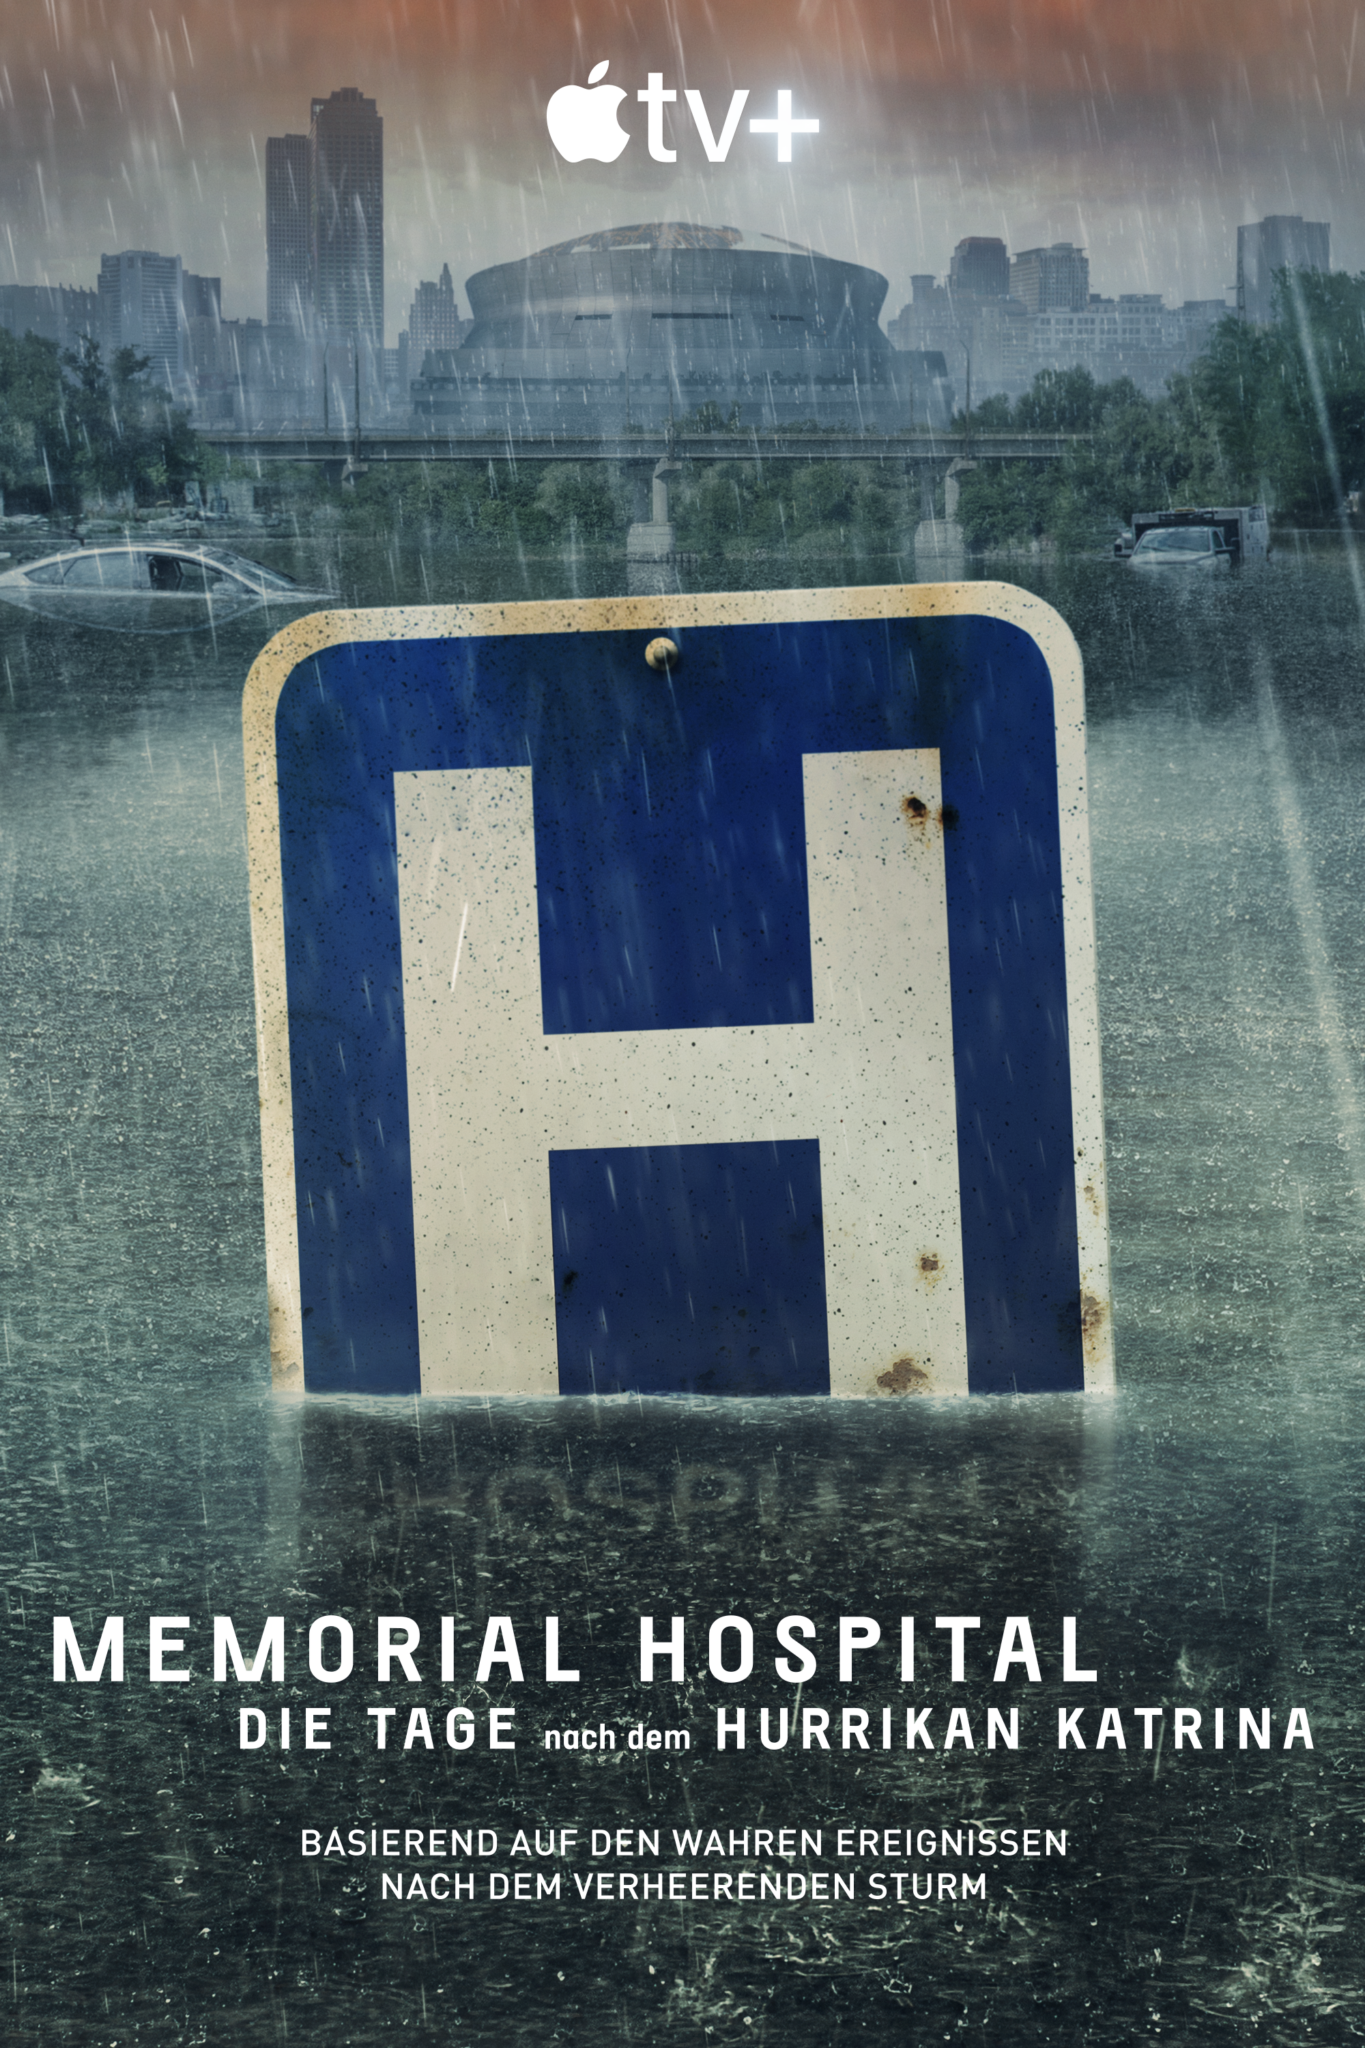 Das Poster zu Memorial Hospital zeigt ein Schild, das schon halb in den Fluten untergegangen ist.